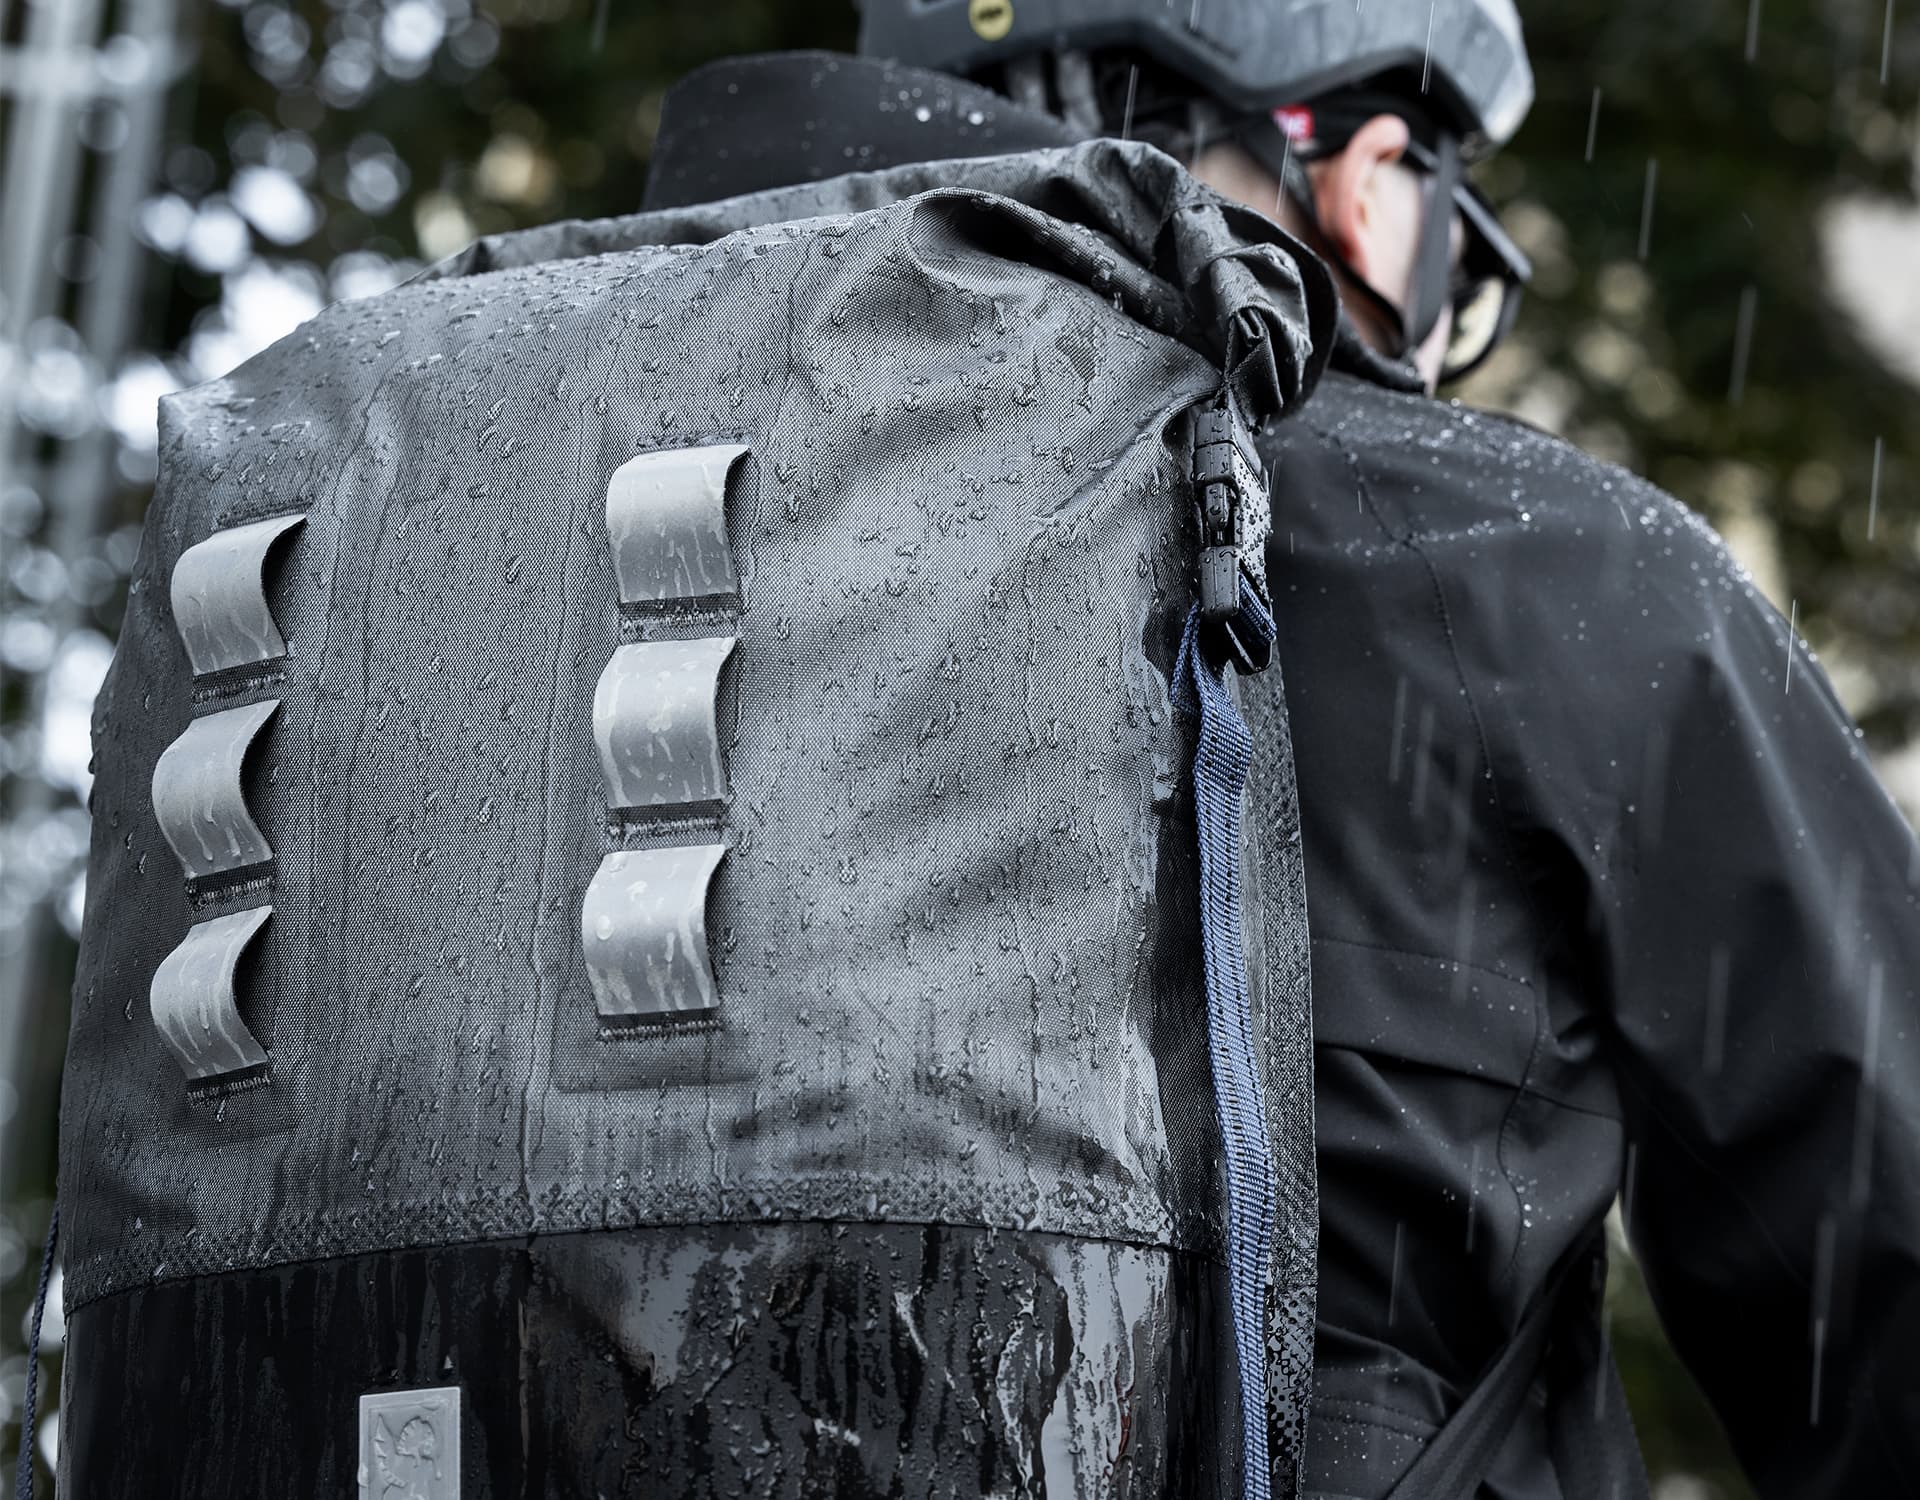 Urban Ex waterproof backpack in the rain